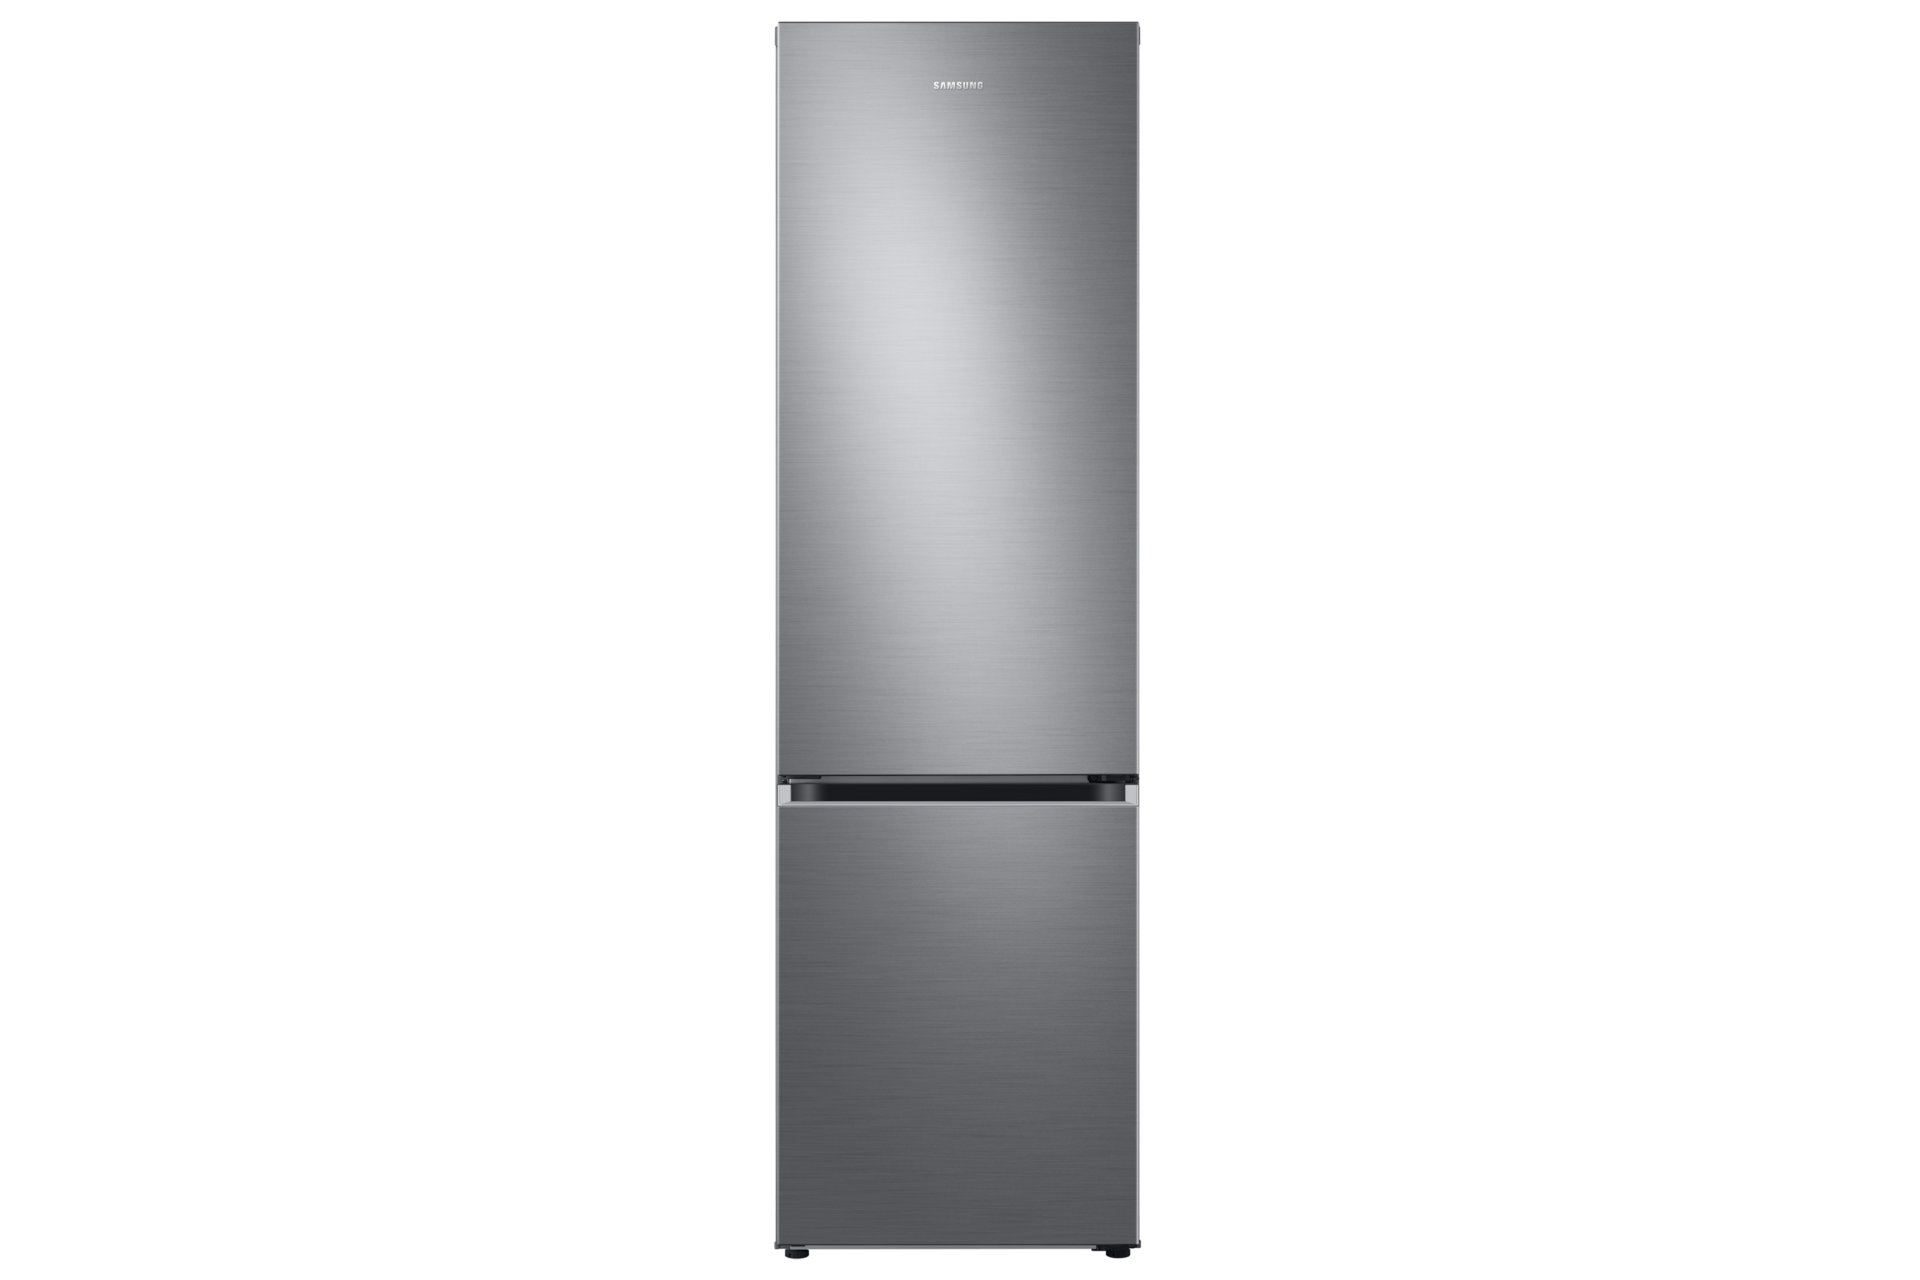 Двухкамерный холодильник lg no frost. Холодильник LG ga-b509. Холодильник LG ga-b419sdjl (тёмный графит). LG ga-b419slul. Холодильник LG ga-b419sdjl графит.